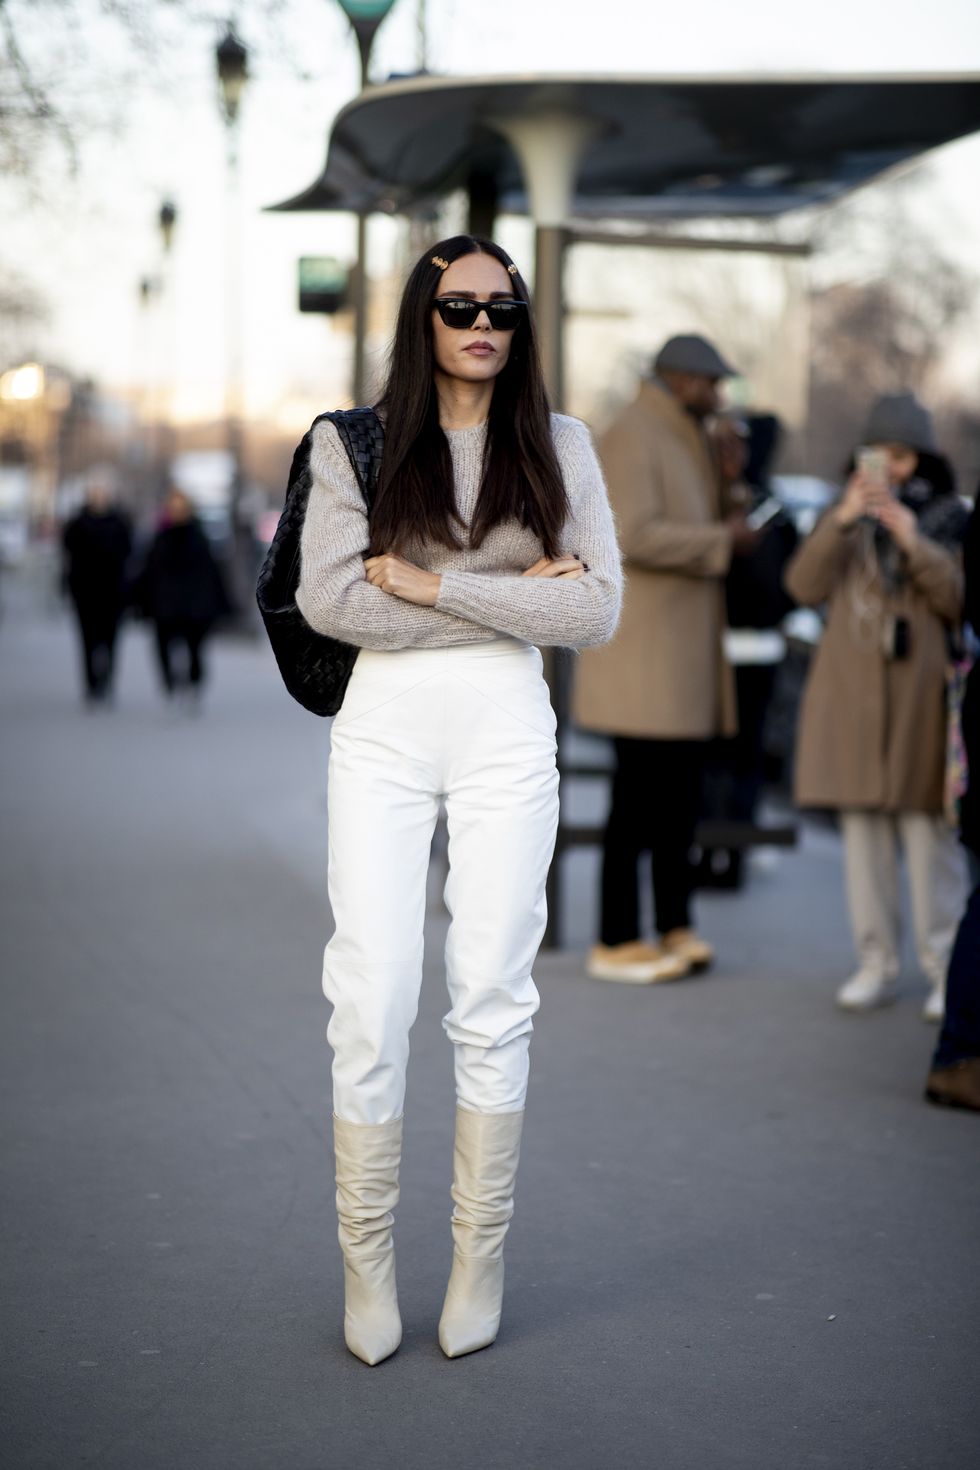 Pantalón blanco: los 10 looks más favorecedores de las expertas en